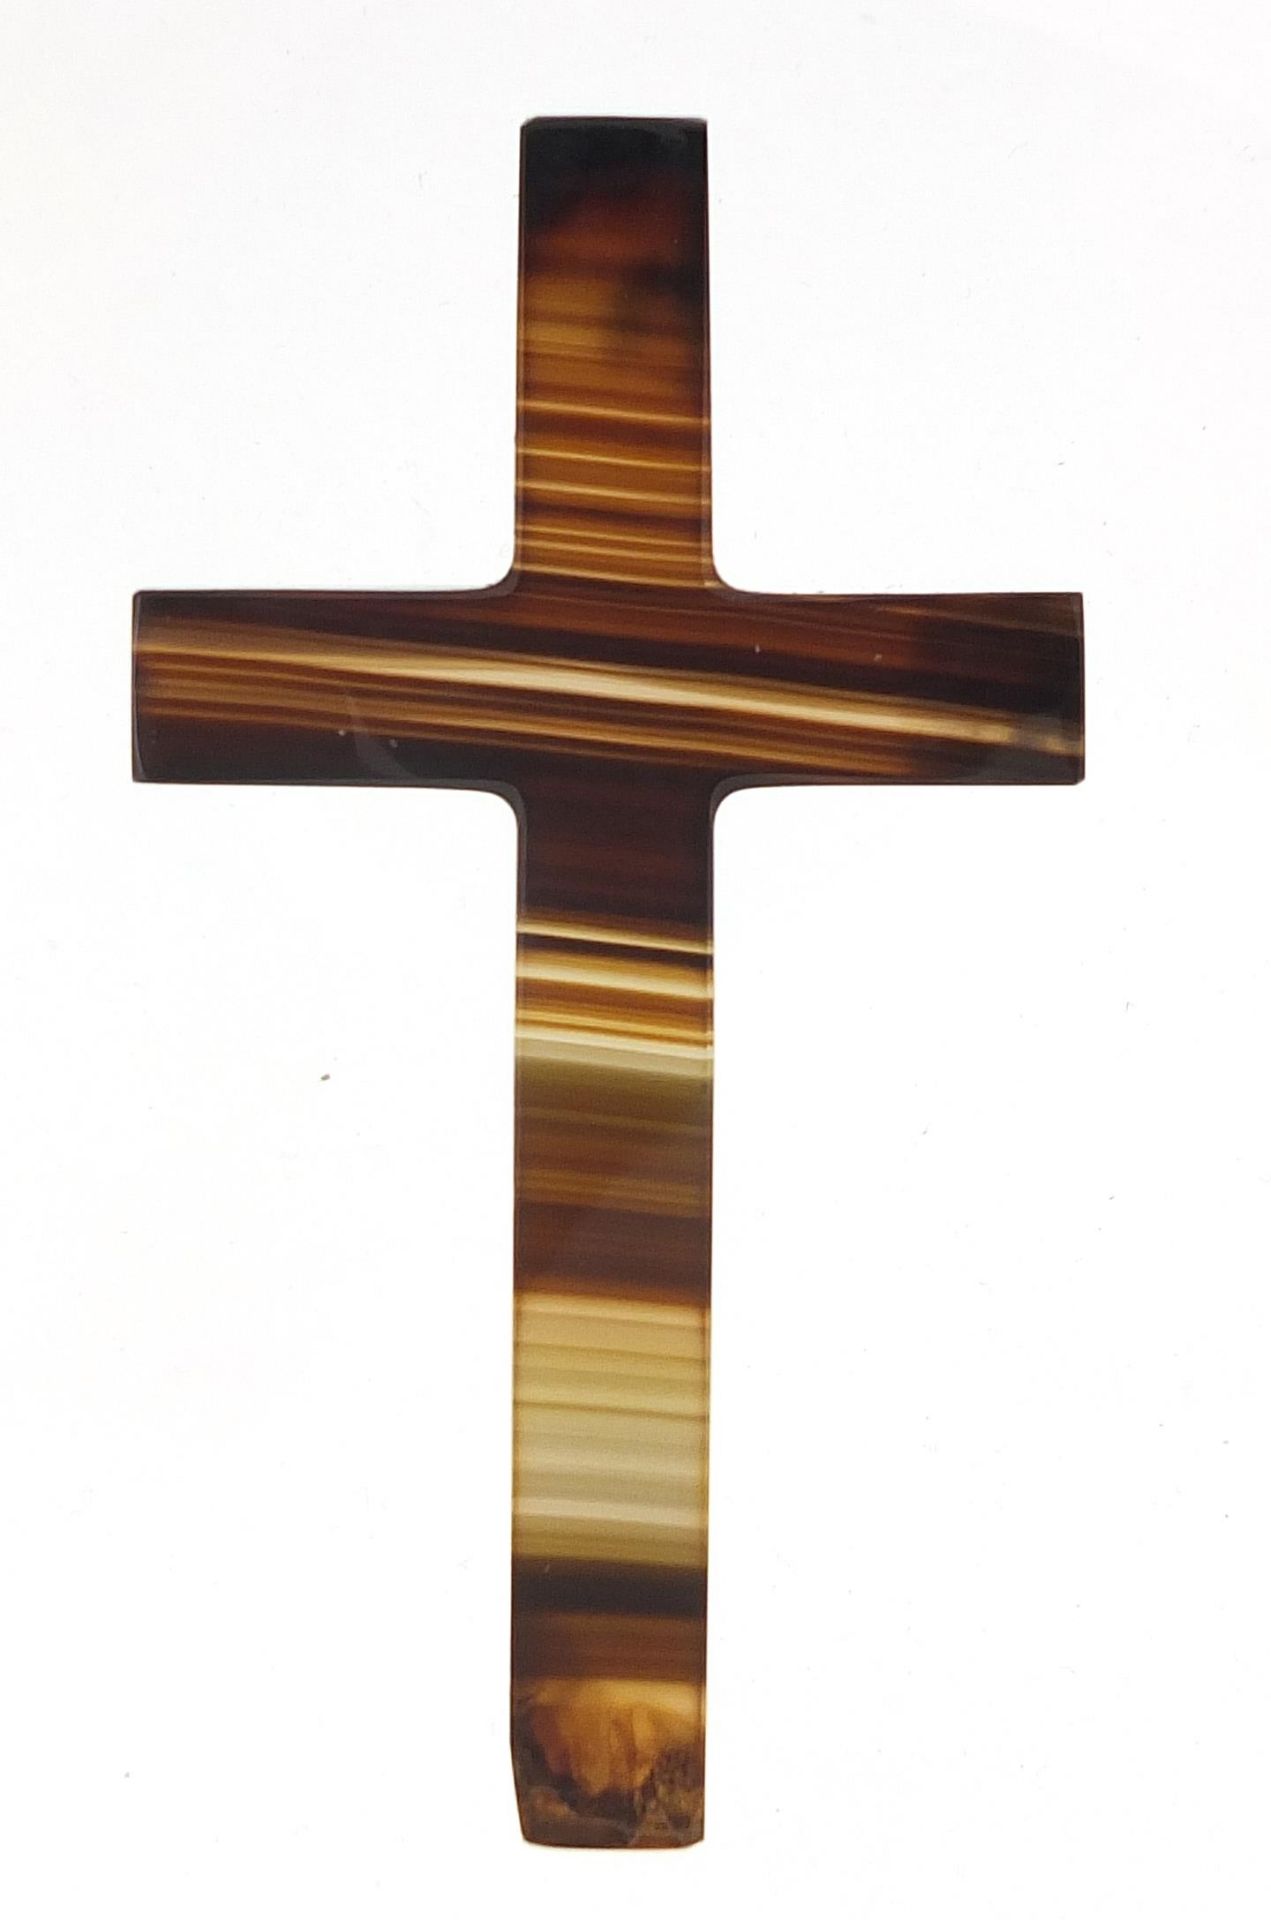 Agate crucifix, 8cm high